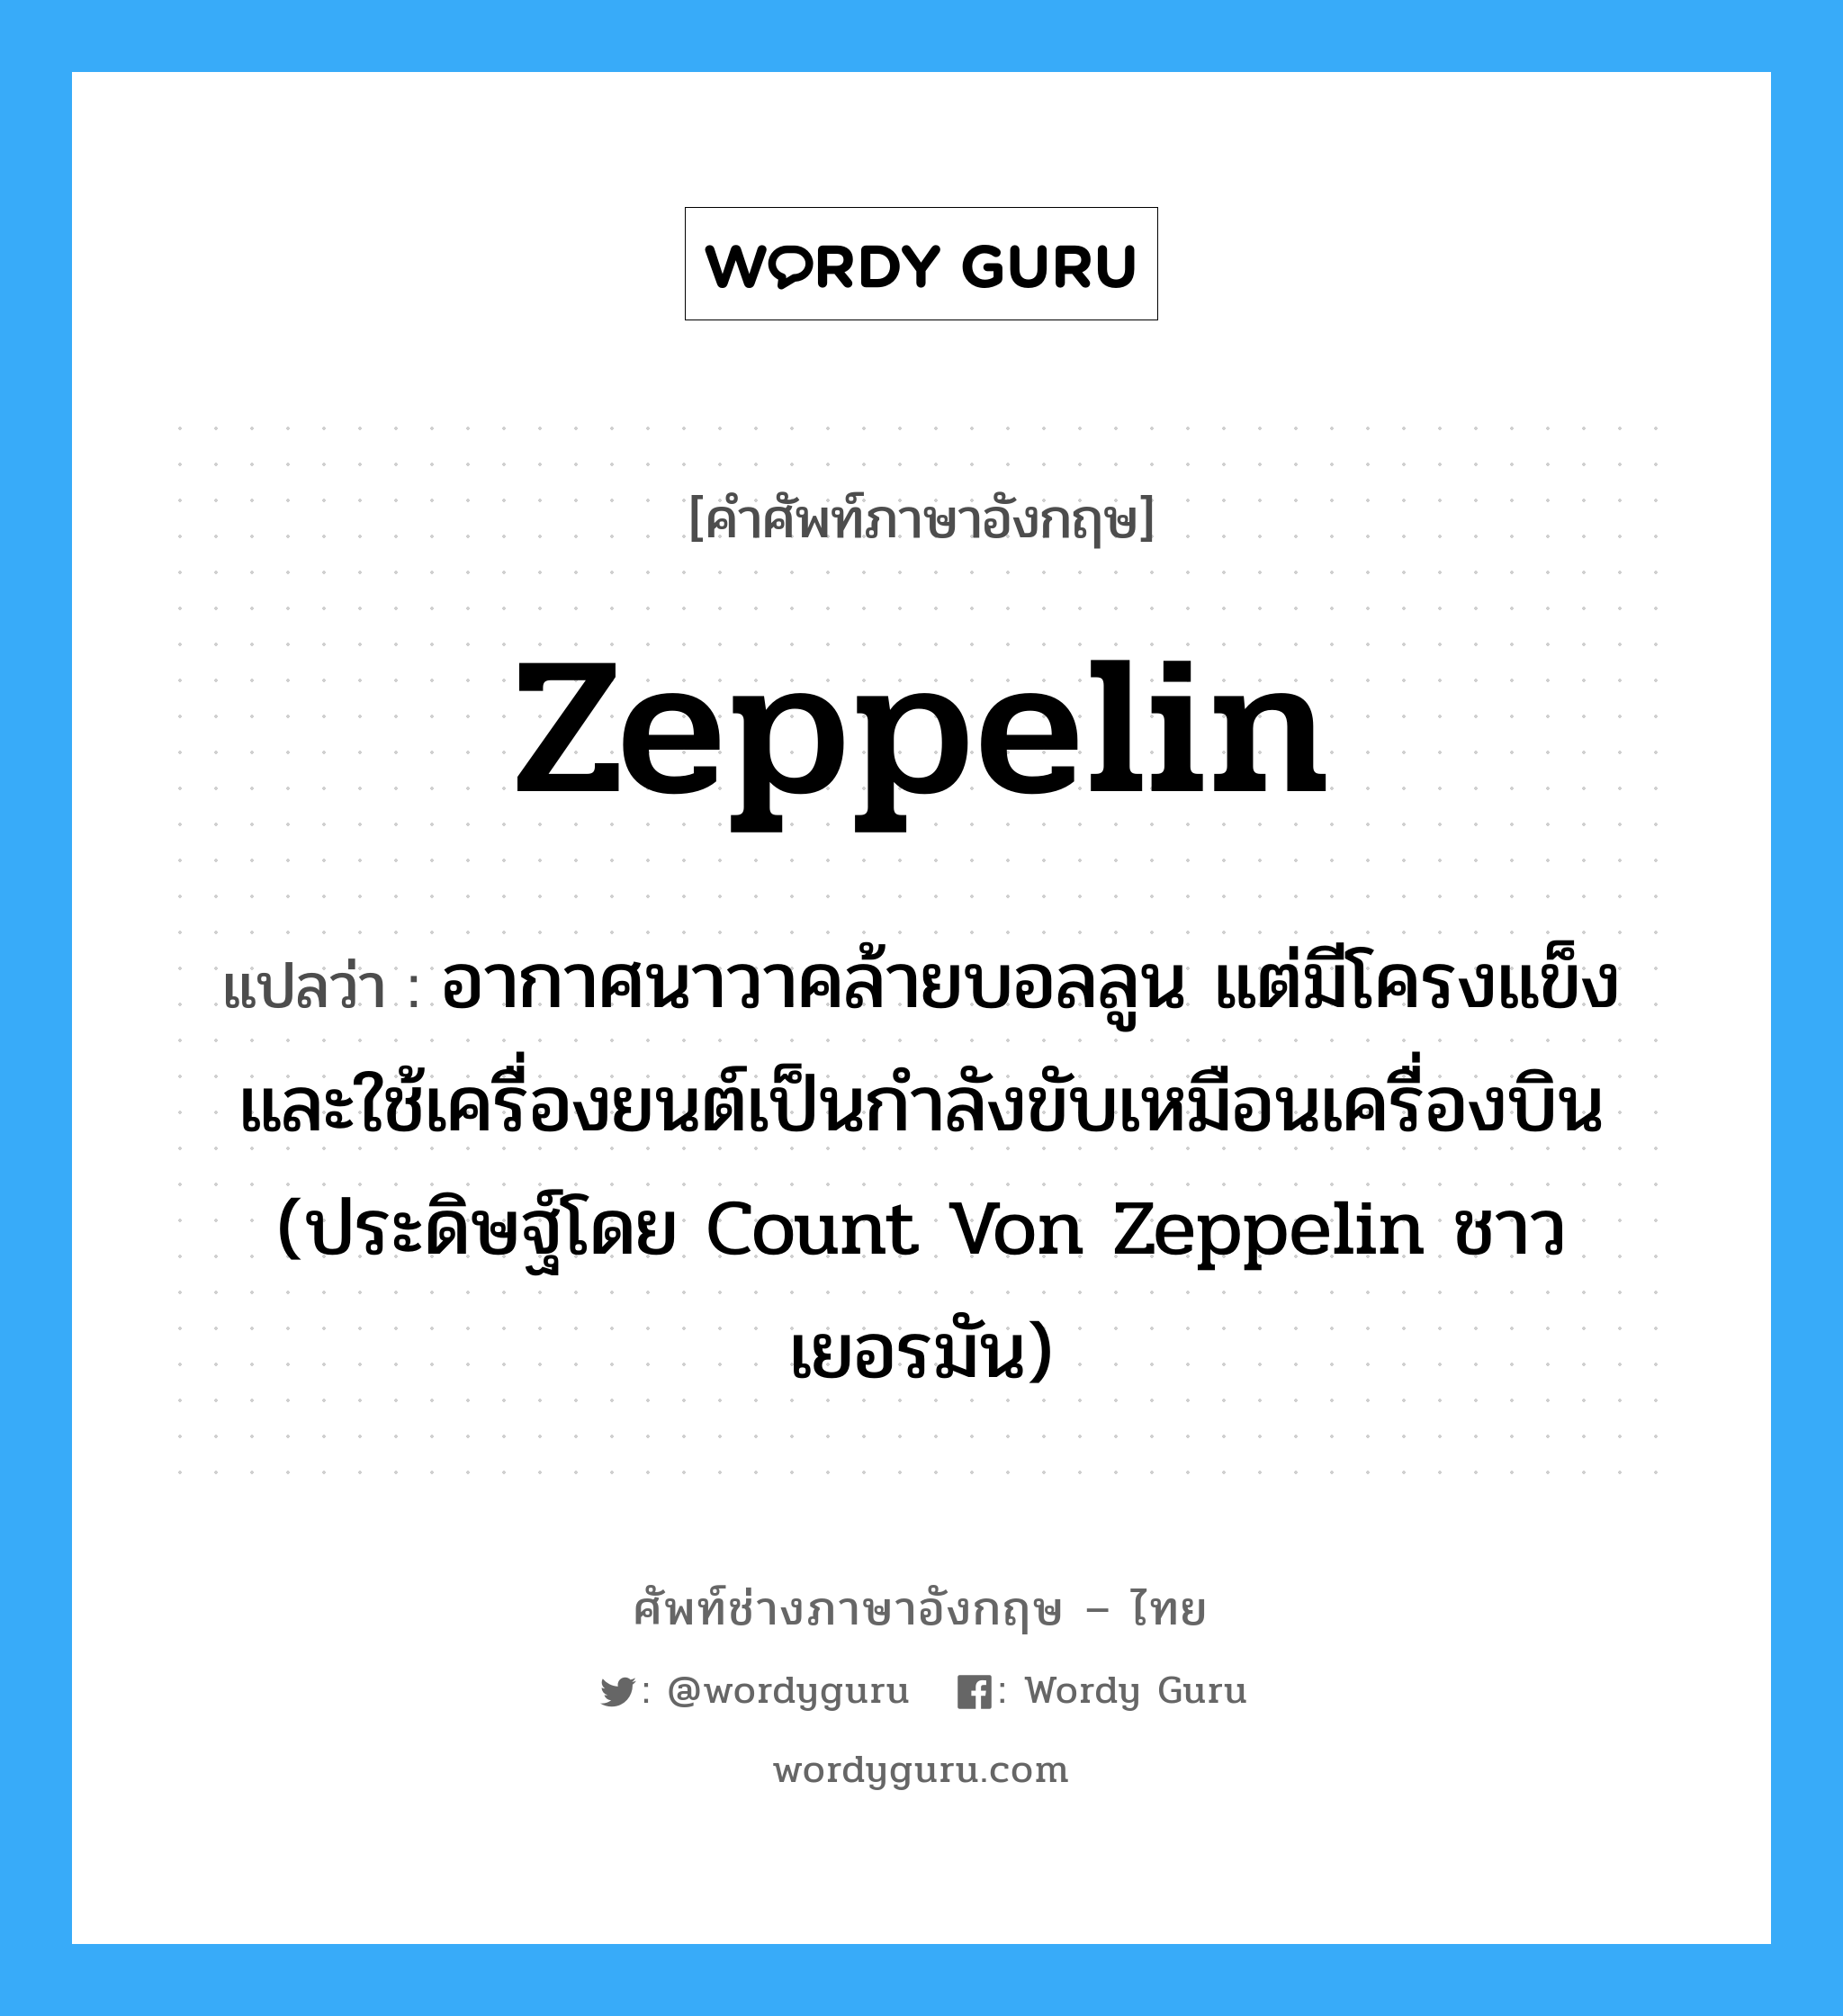 zeppelin แปลว่า?, คำศัพท์ช่างภาษาอังกฤษ - ไทย zeppelin คำศัพท์ภาษาอังกฤษ zeppelin แปลว่า อากาศนาวาคล้ายบอลลูน แต่มีโครงแข็ง และใช้เครื่องยนต์เป็นกำลังขับเหมือนเครื่องบิน (ประดิษฐ์โดย Count Von Zeppelin ชาวเยอรมัน)